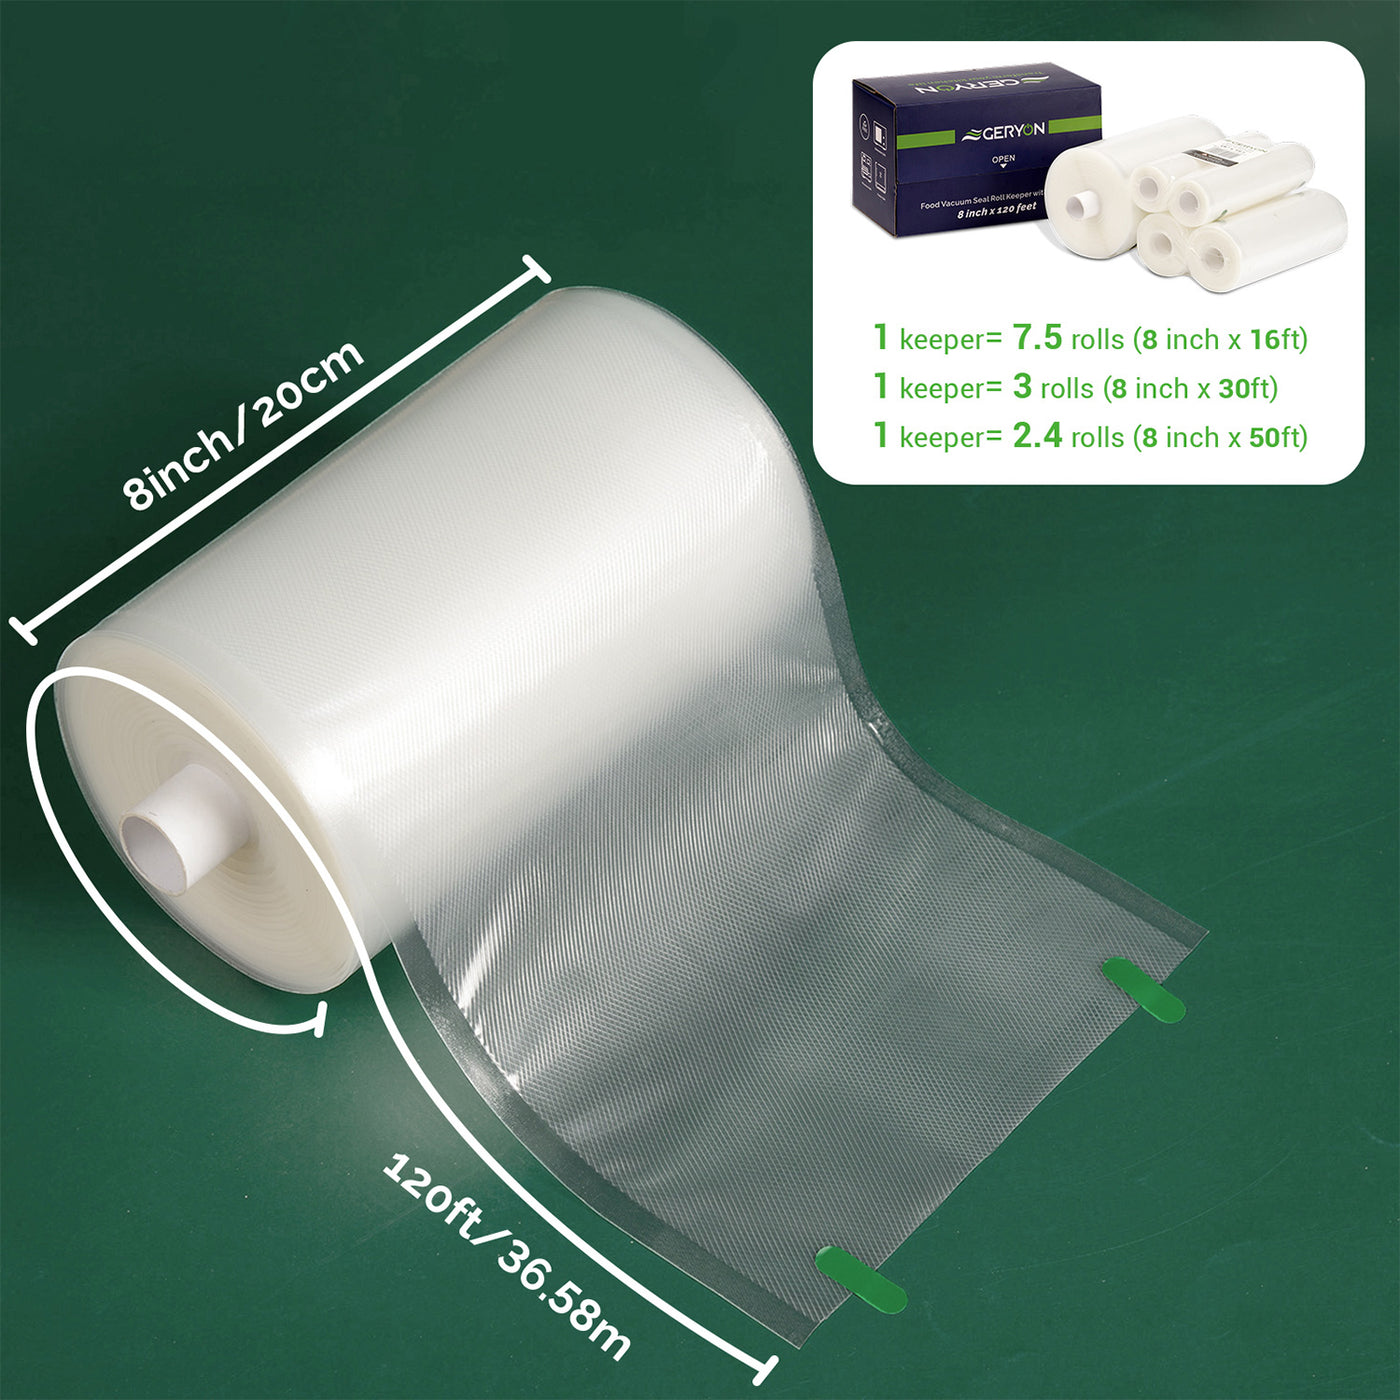 GERYON Vacuum Sealer Bags for All Food Vacuum Sealer Machine, 2 Pack 8 x  16' Vac Sealer Rolls, Commercial Grade BPA Free Material for Sous Vide &  Saver Storage 